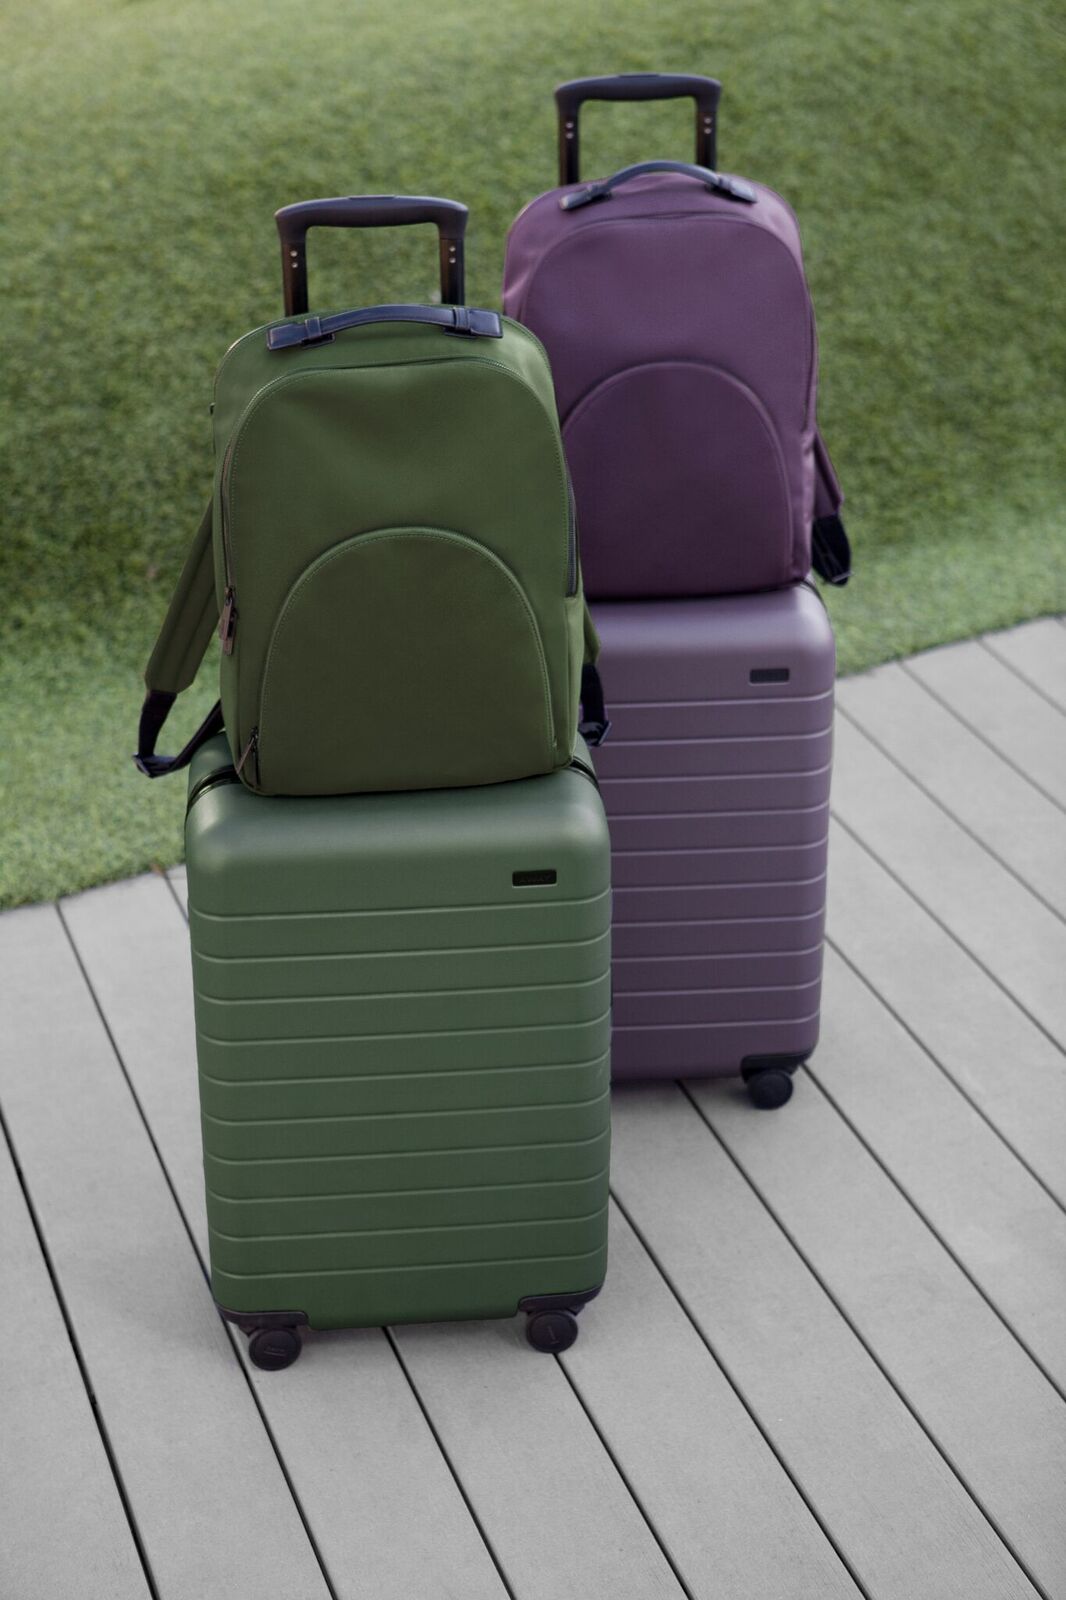 away luggage green